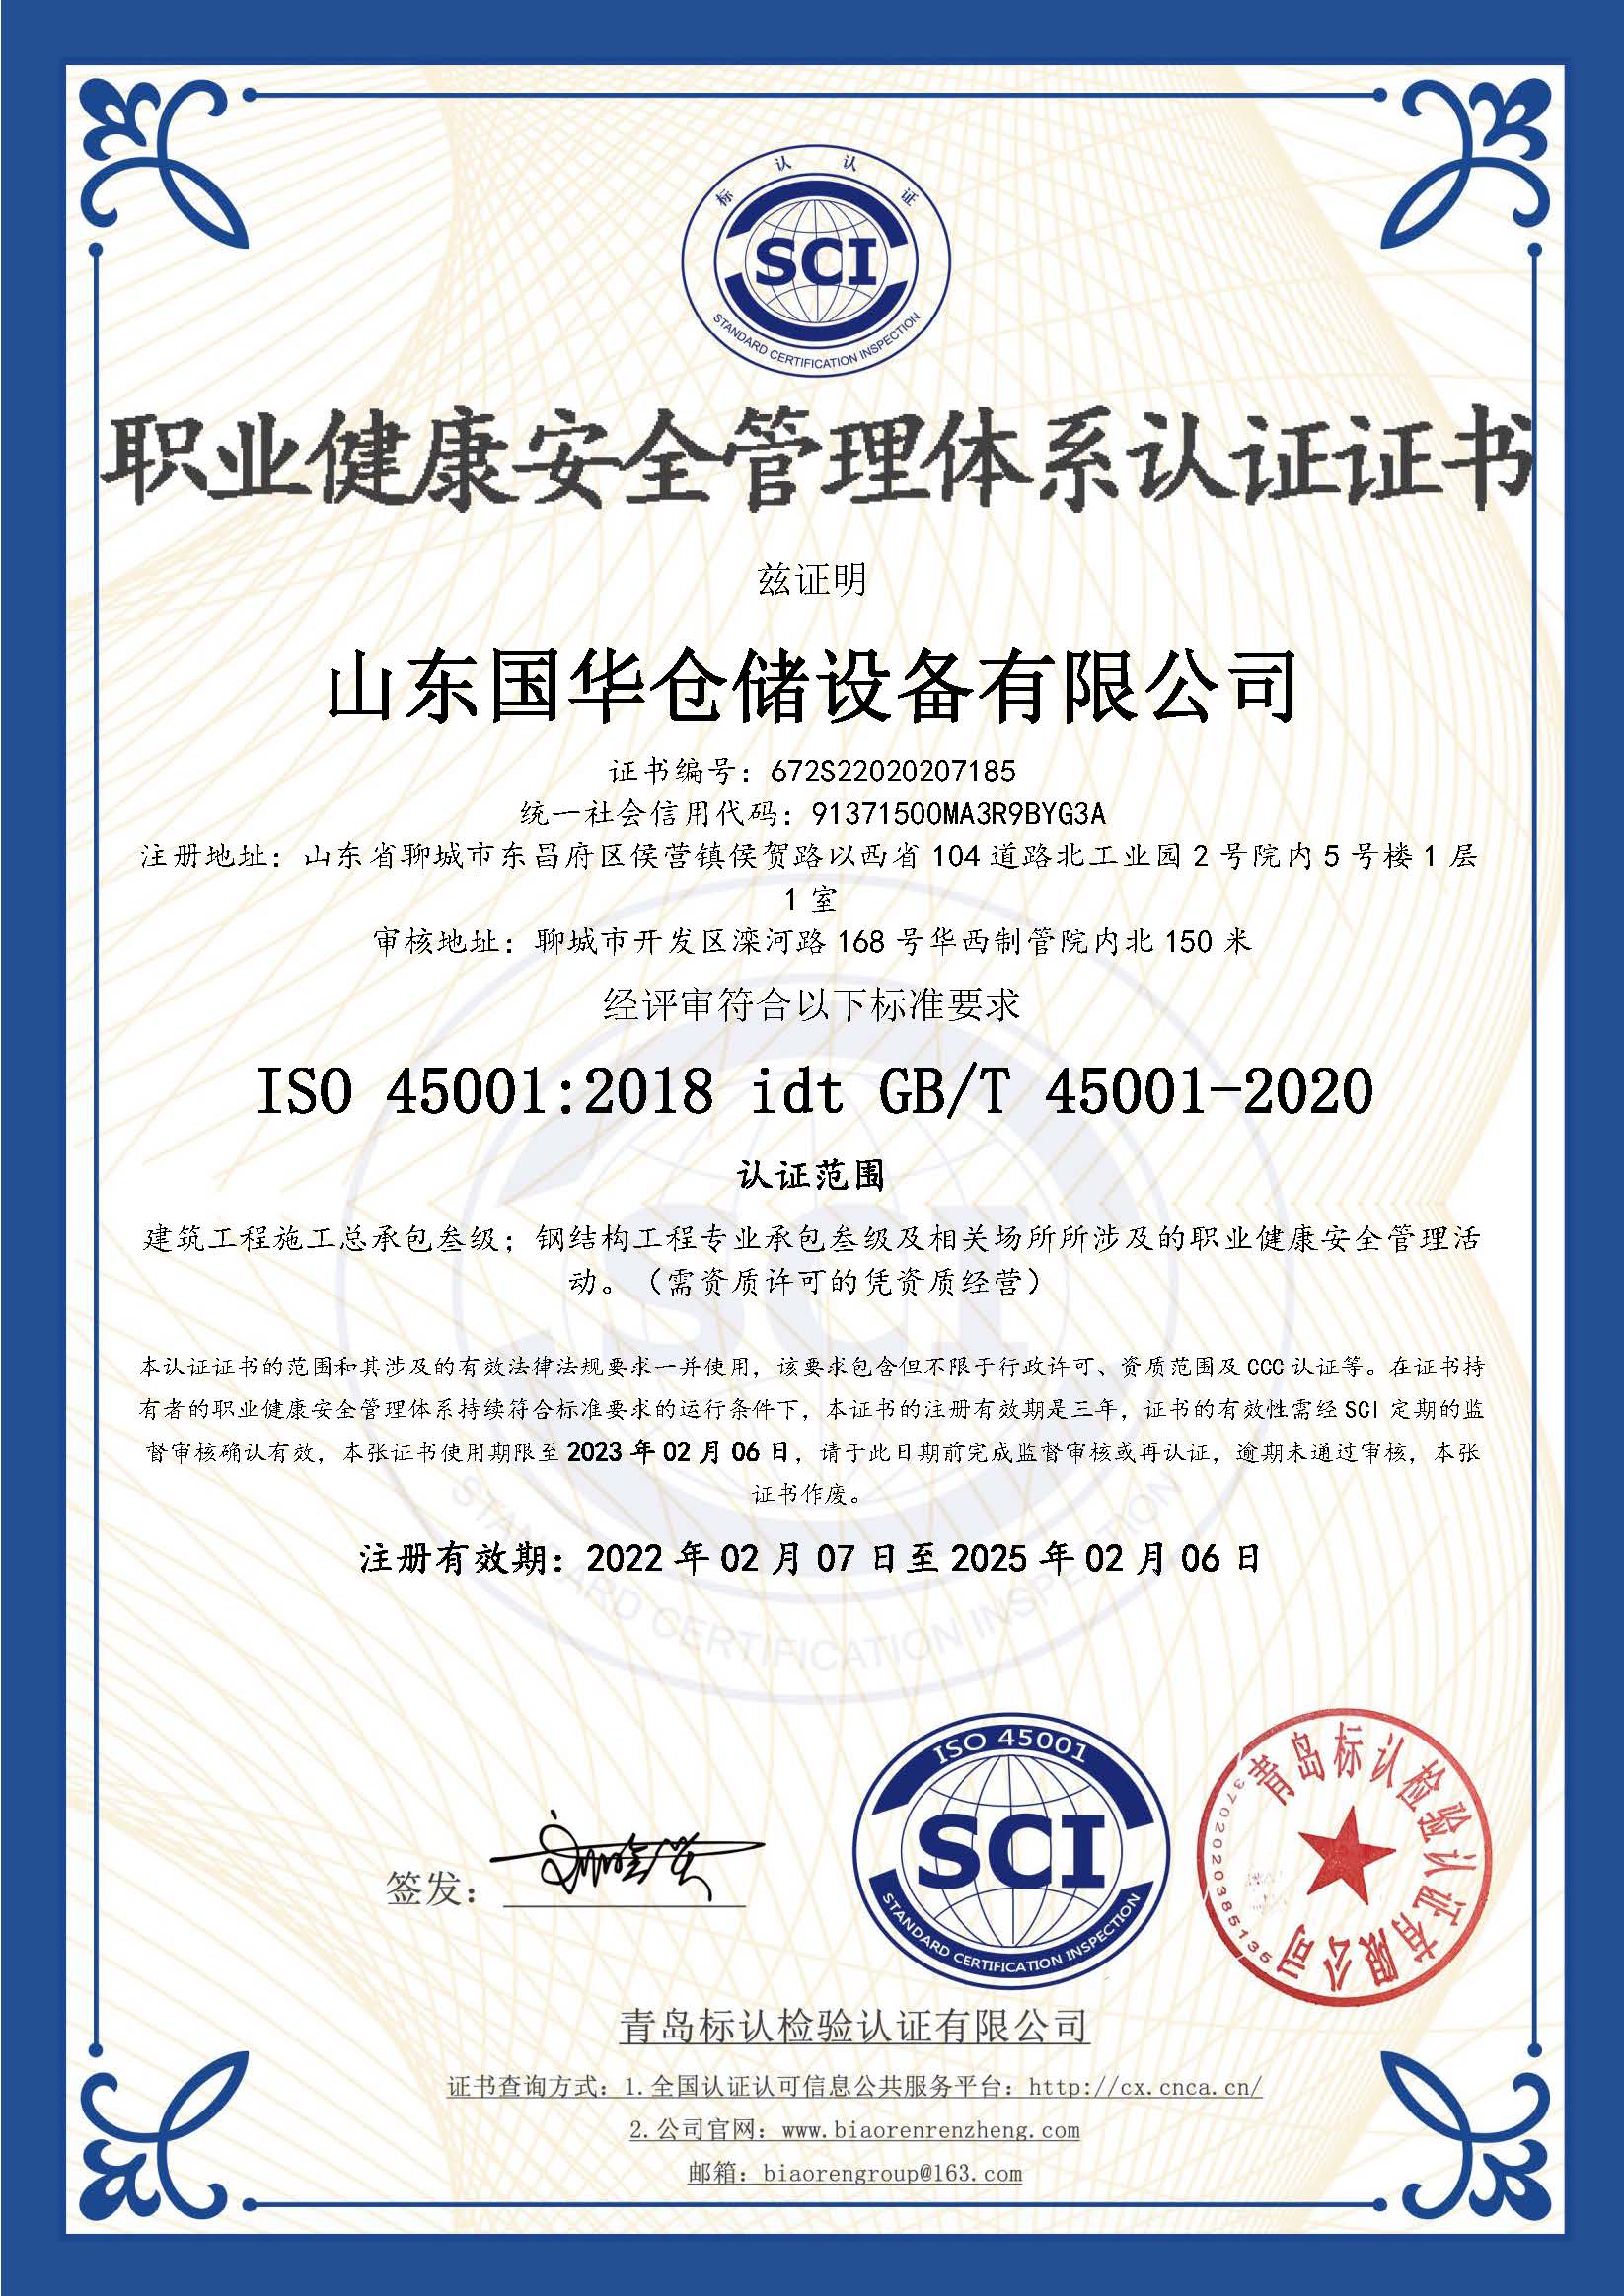 贵阳钢板仓职业健康安全管理体系认证证书